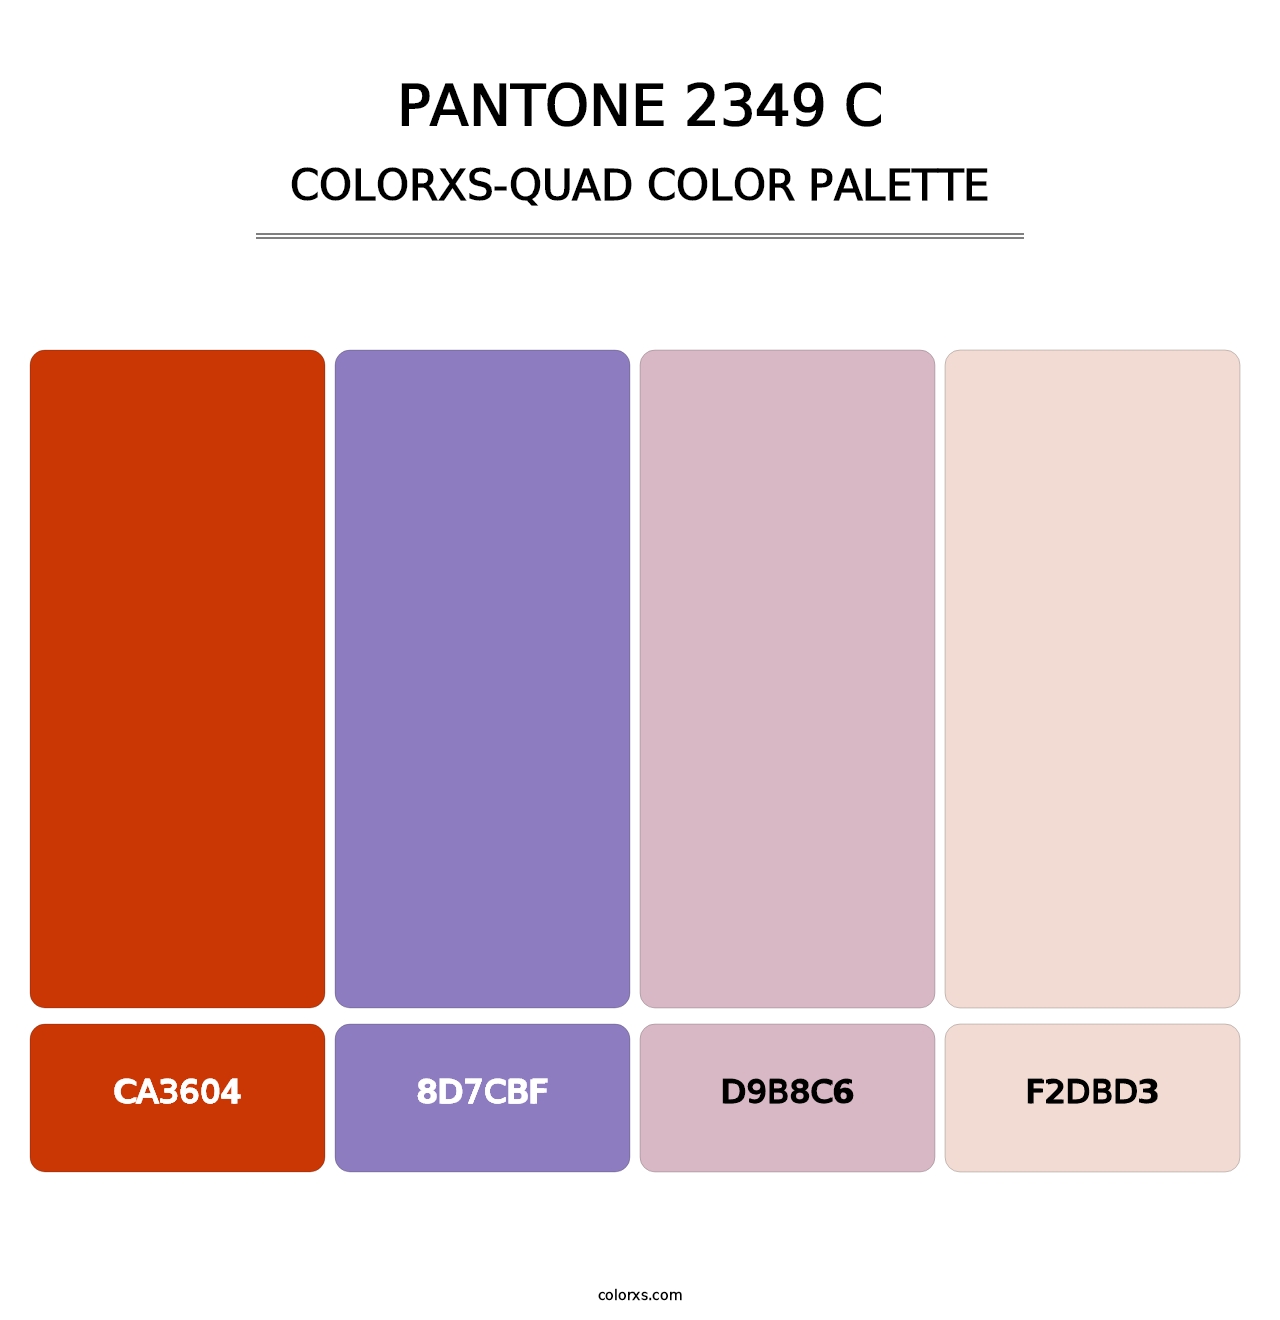 PANTONE 2349 C - Colorxs Quad Palette